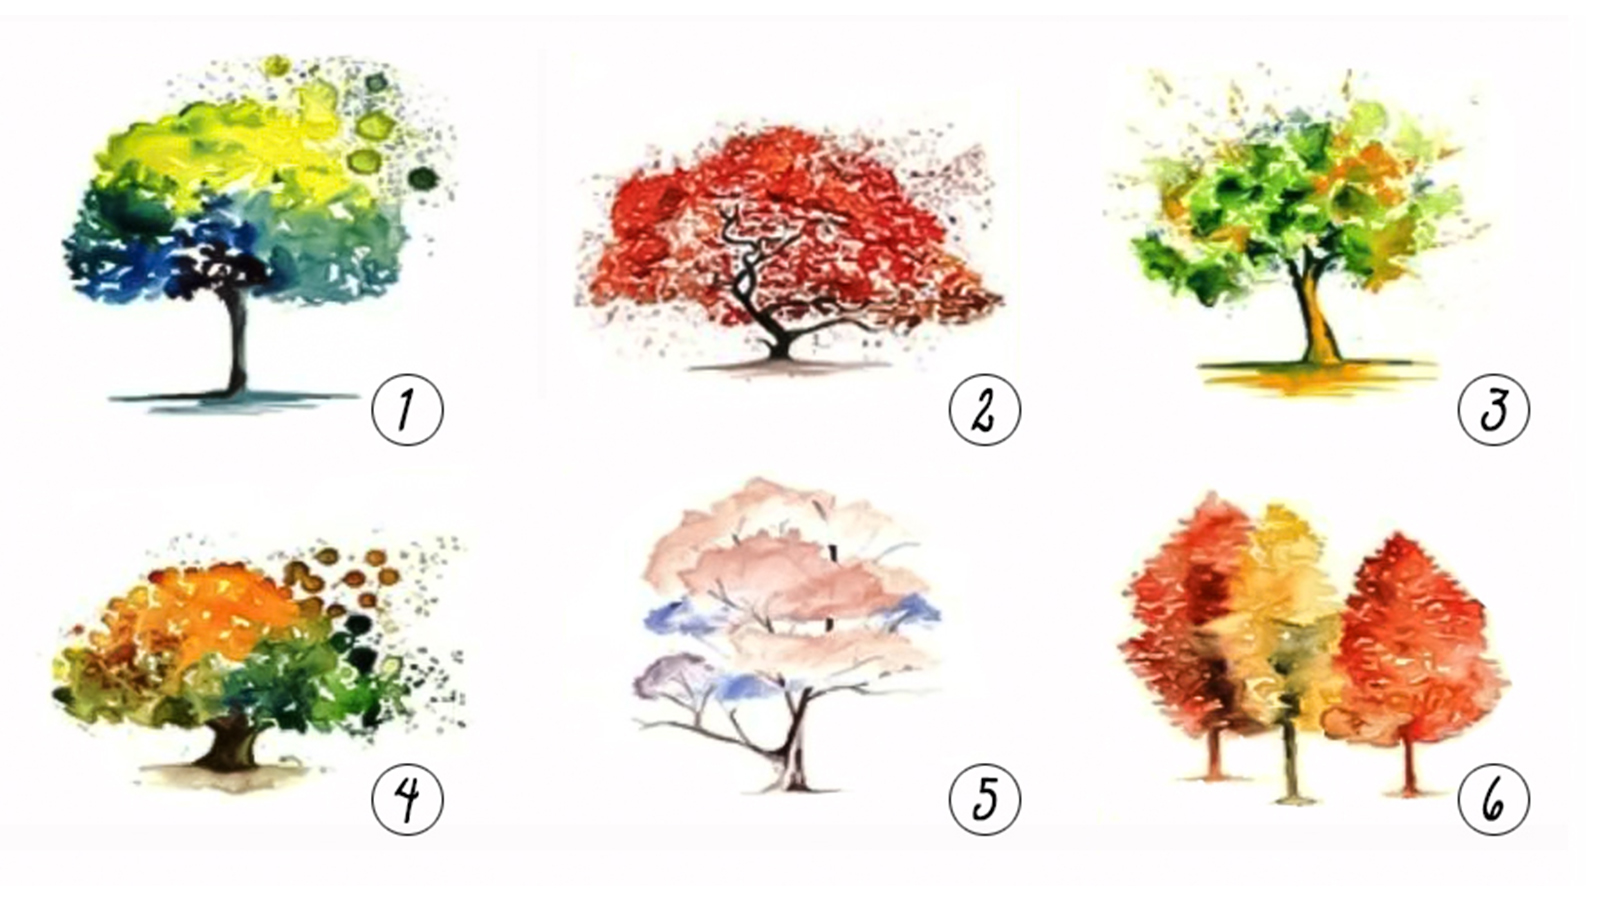 Trắc nghiệm: Hình ảnh cây cối bạn chọn nói gì về con người bạn? I ELLE